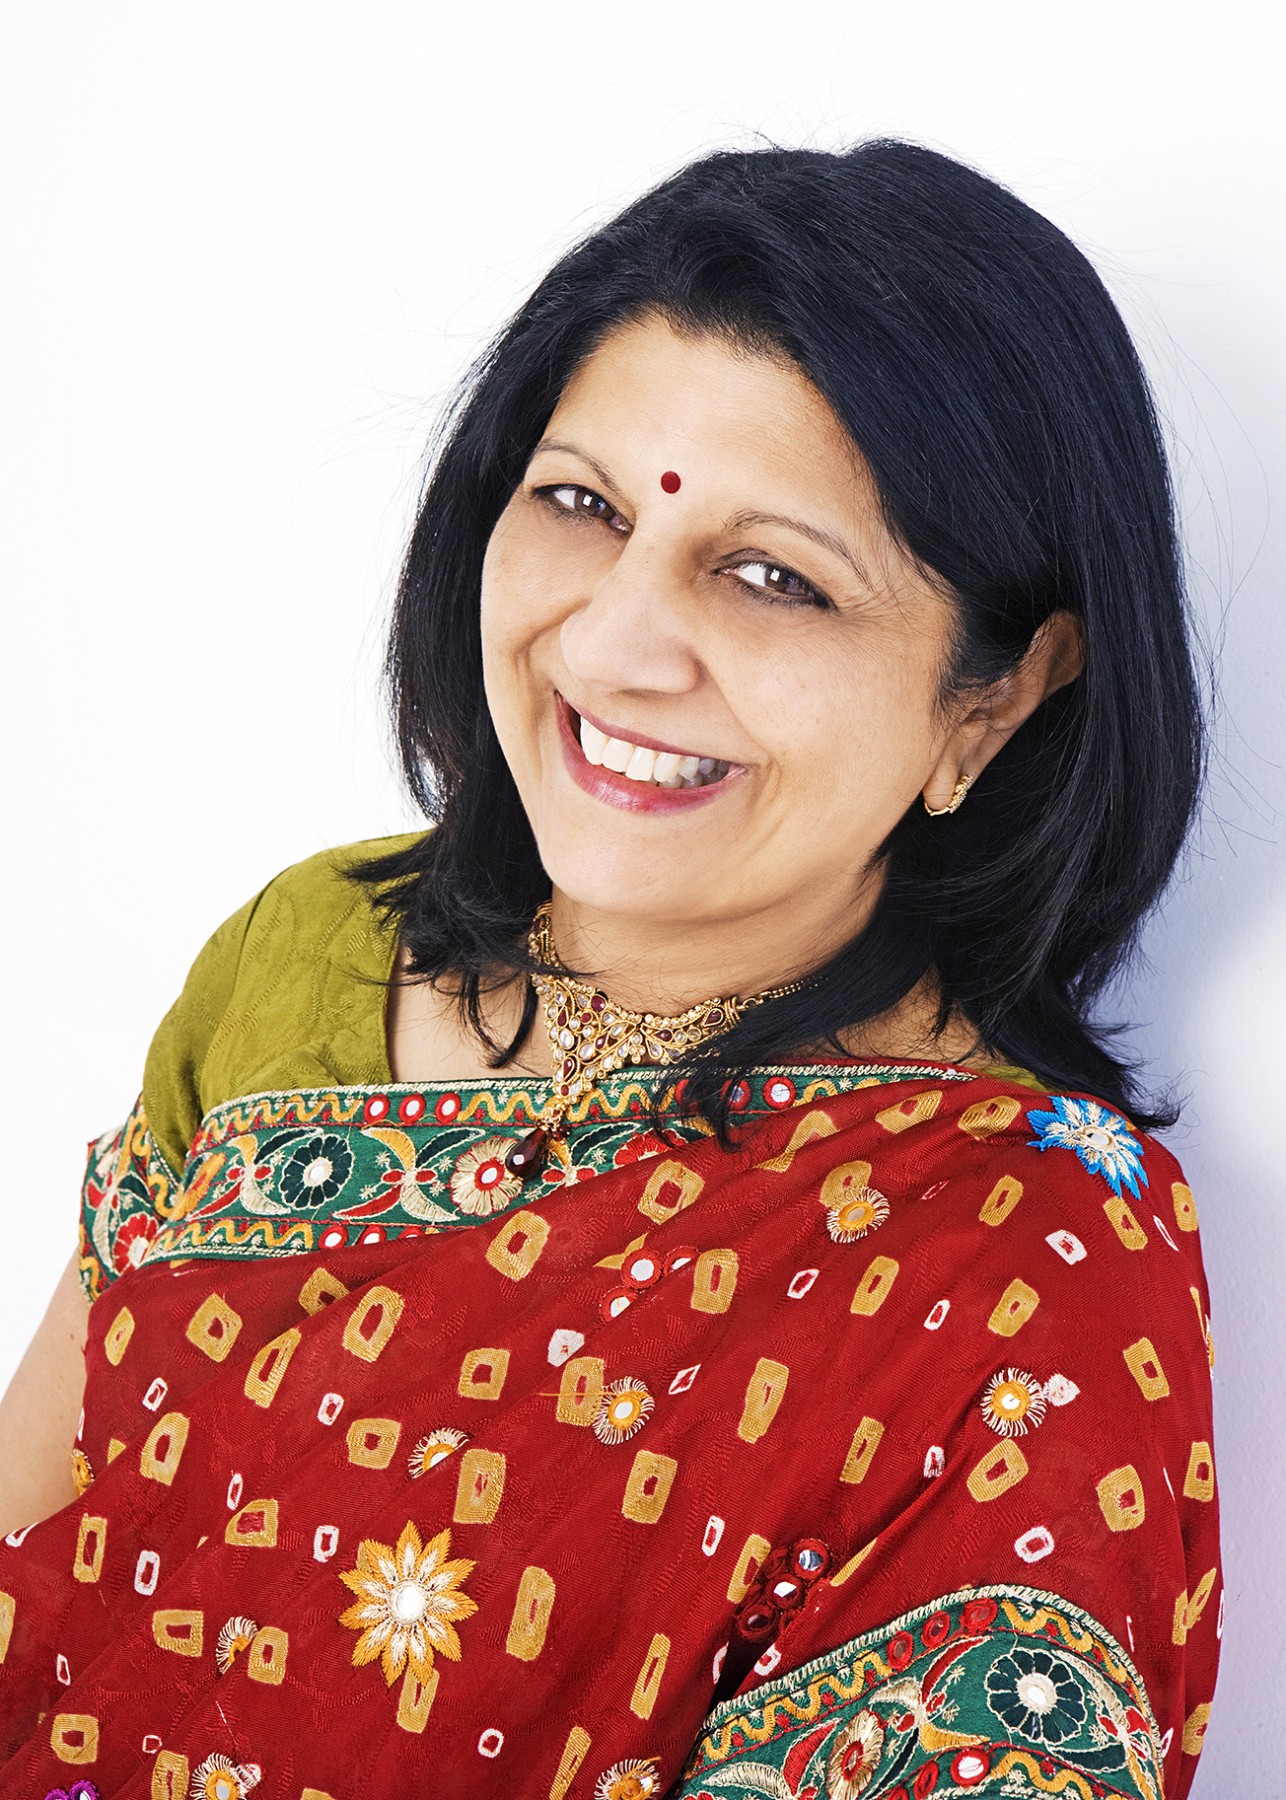 Ranjna Patel